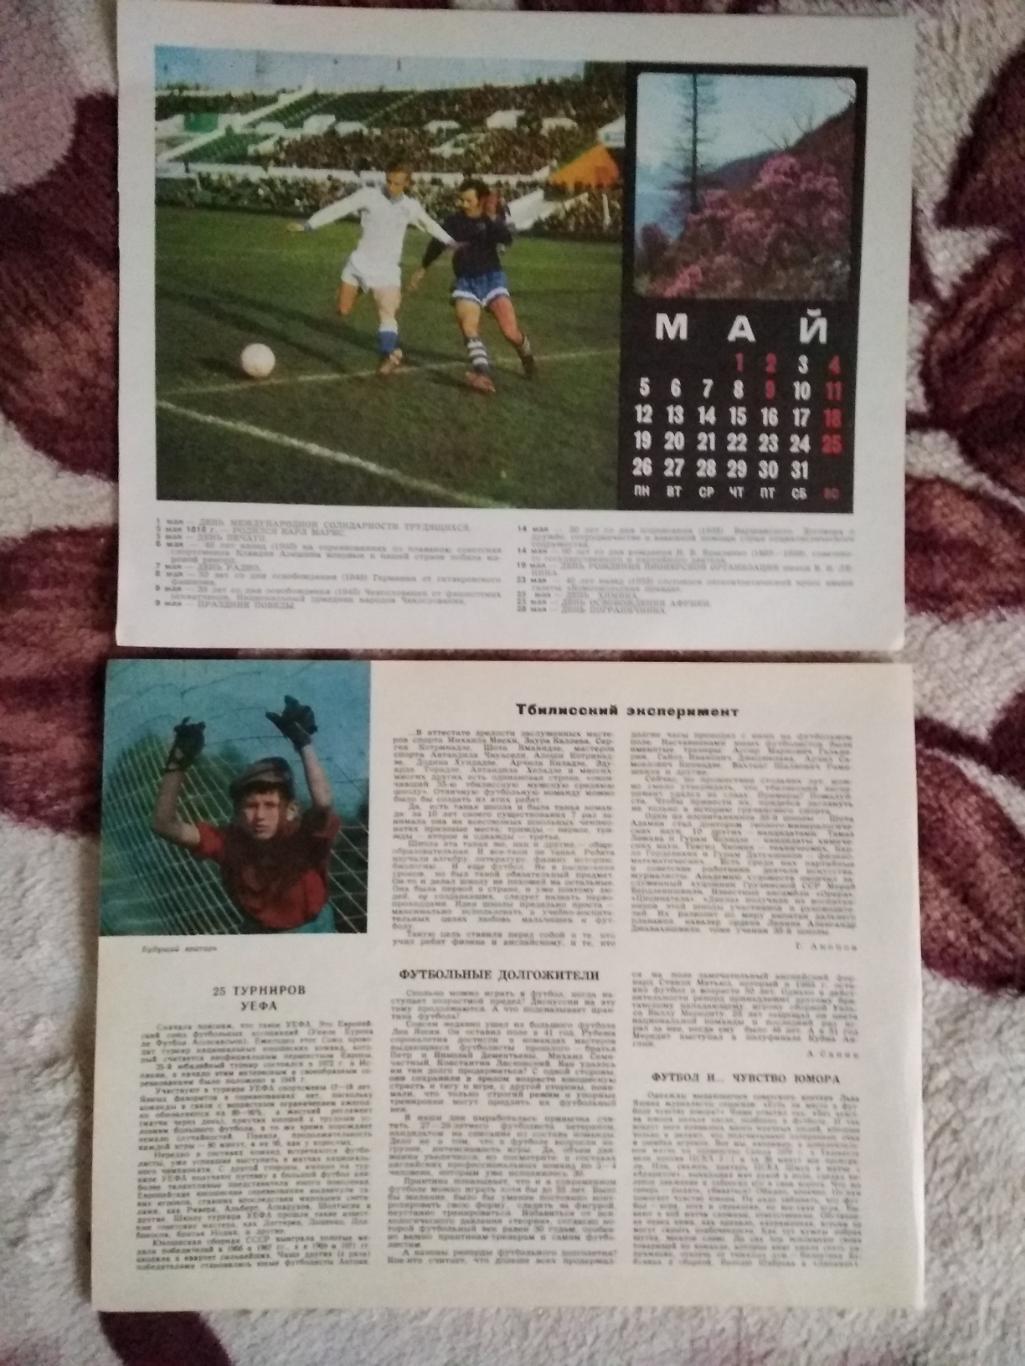 Статья.Футбол.Календарь Спорт 1975 г. (7).